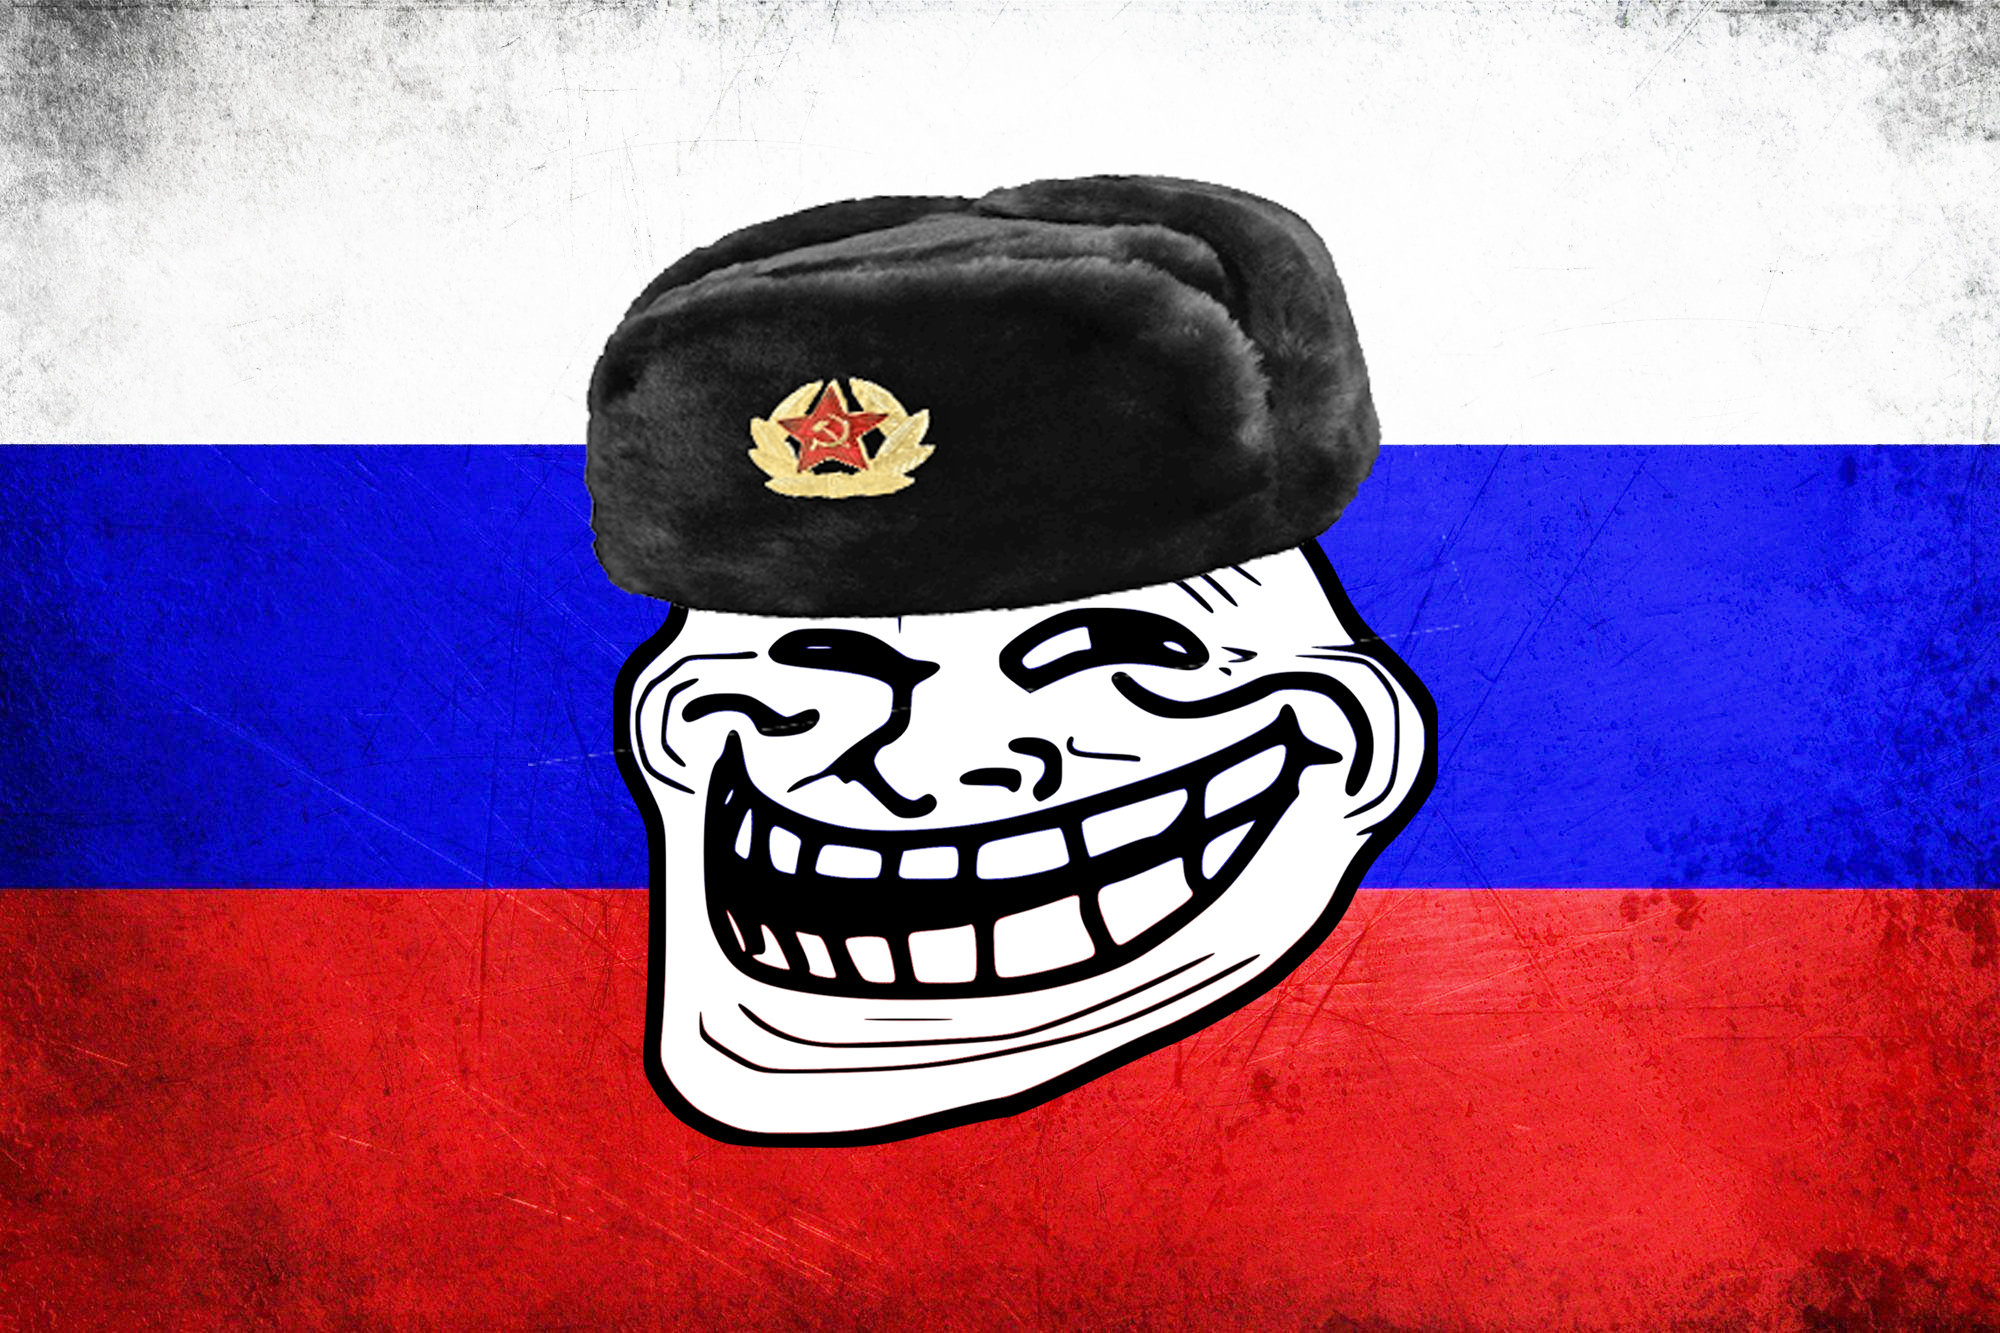 Guerre en Ukraine : une usine à trolls pro-russe détectée à Saint-Pétersbourg par les autorités britanniques